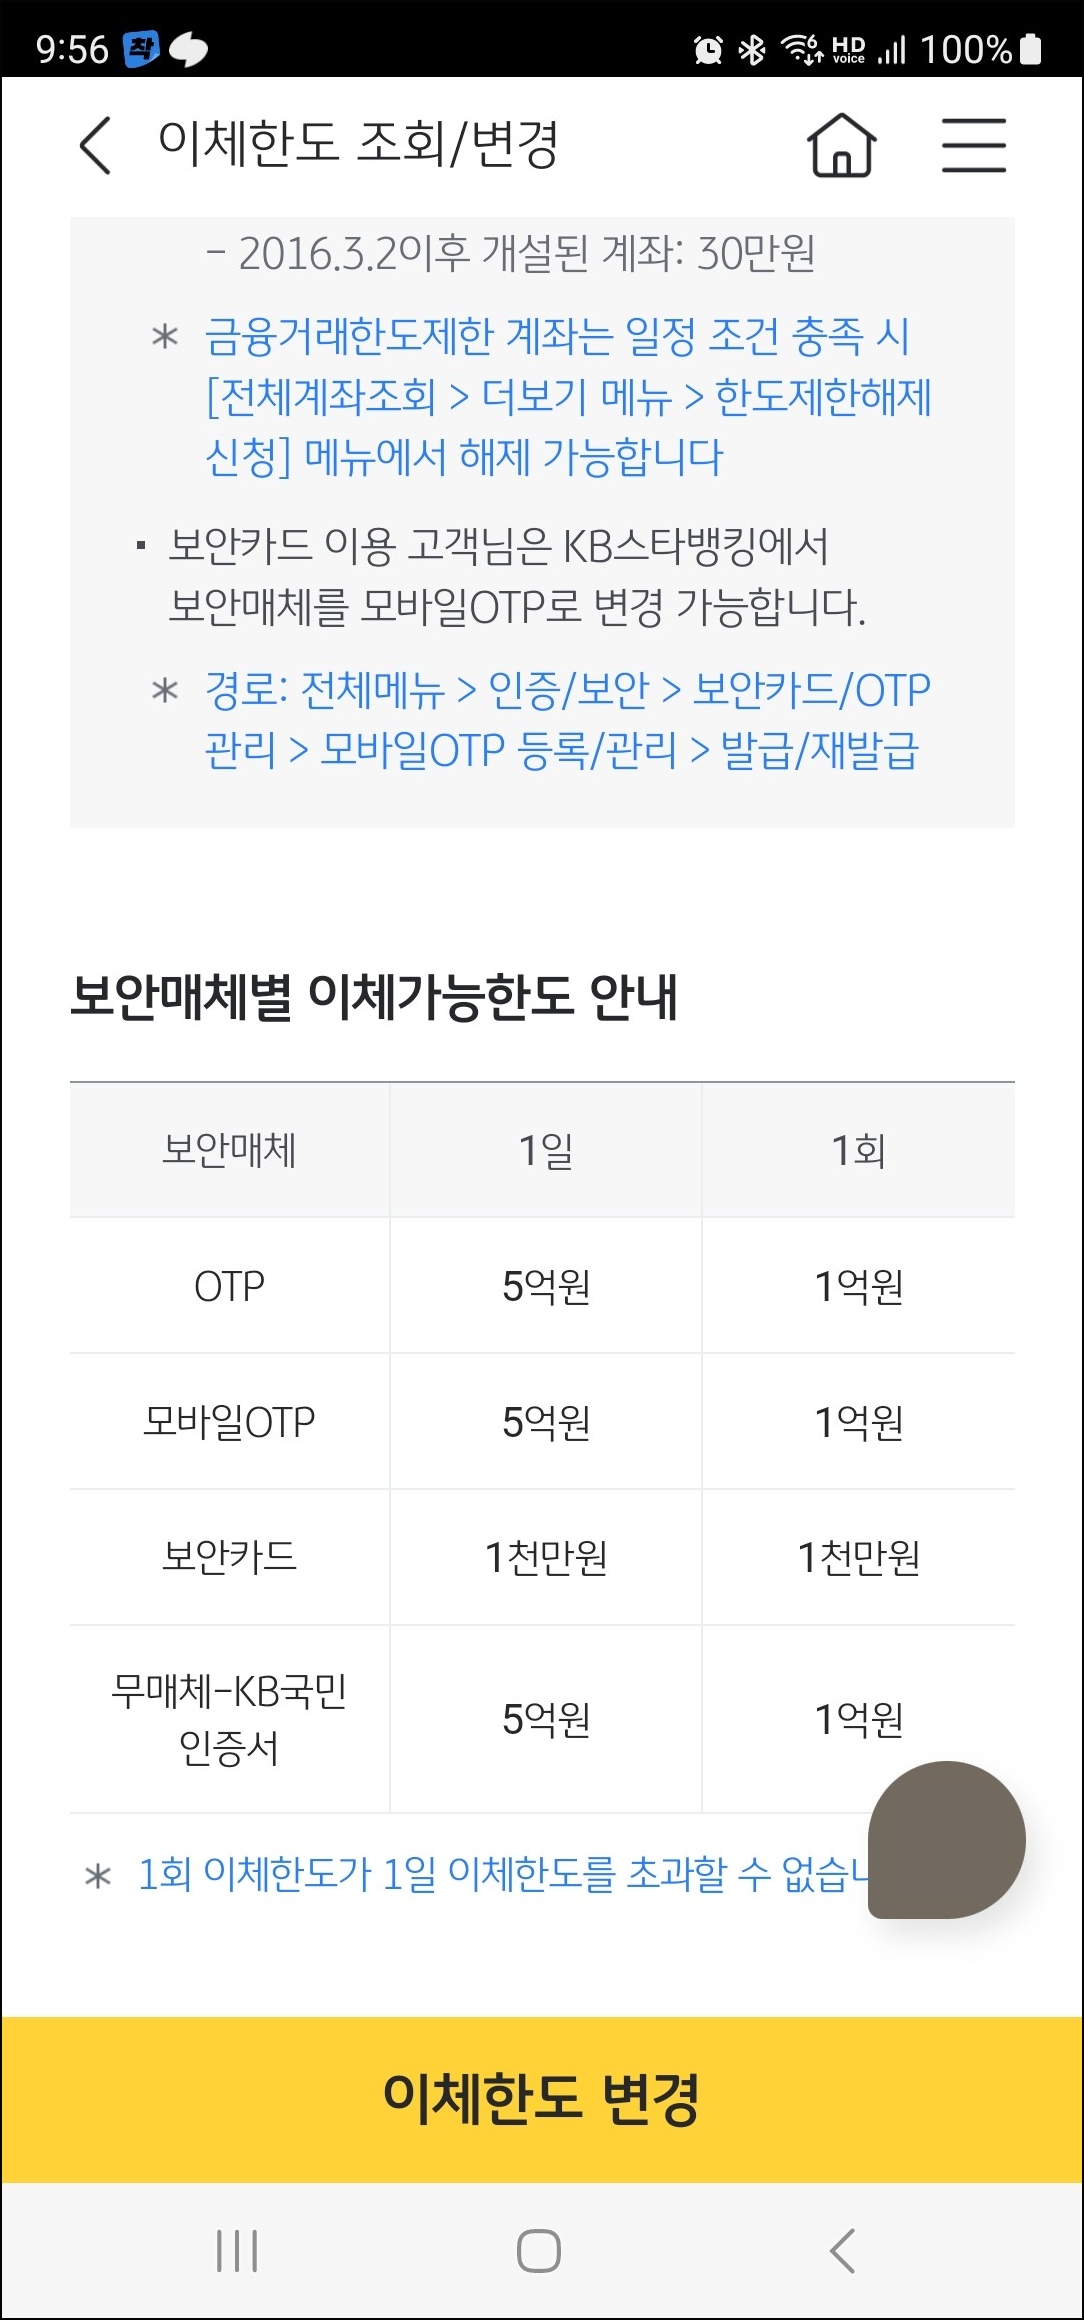 국민은행 KB스타뱅킹 1일 1회 이체한도 조회 변경 신청